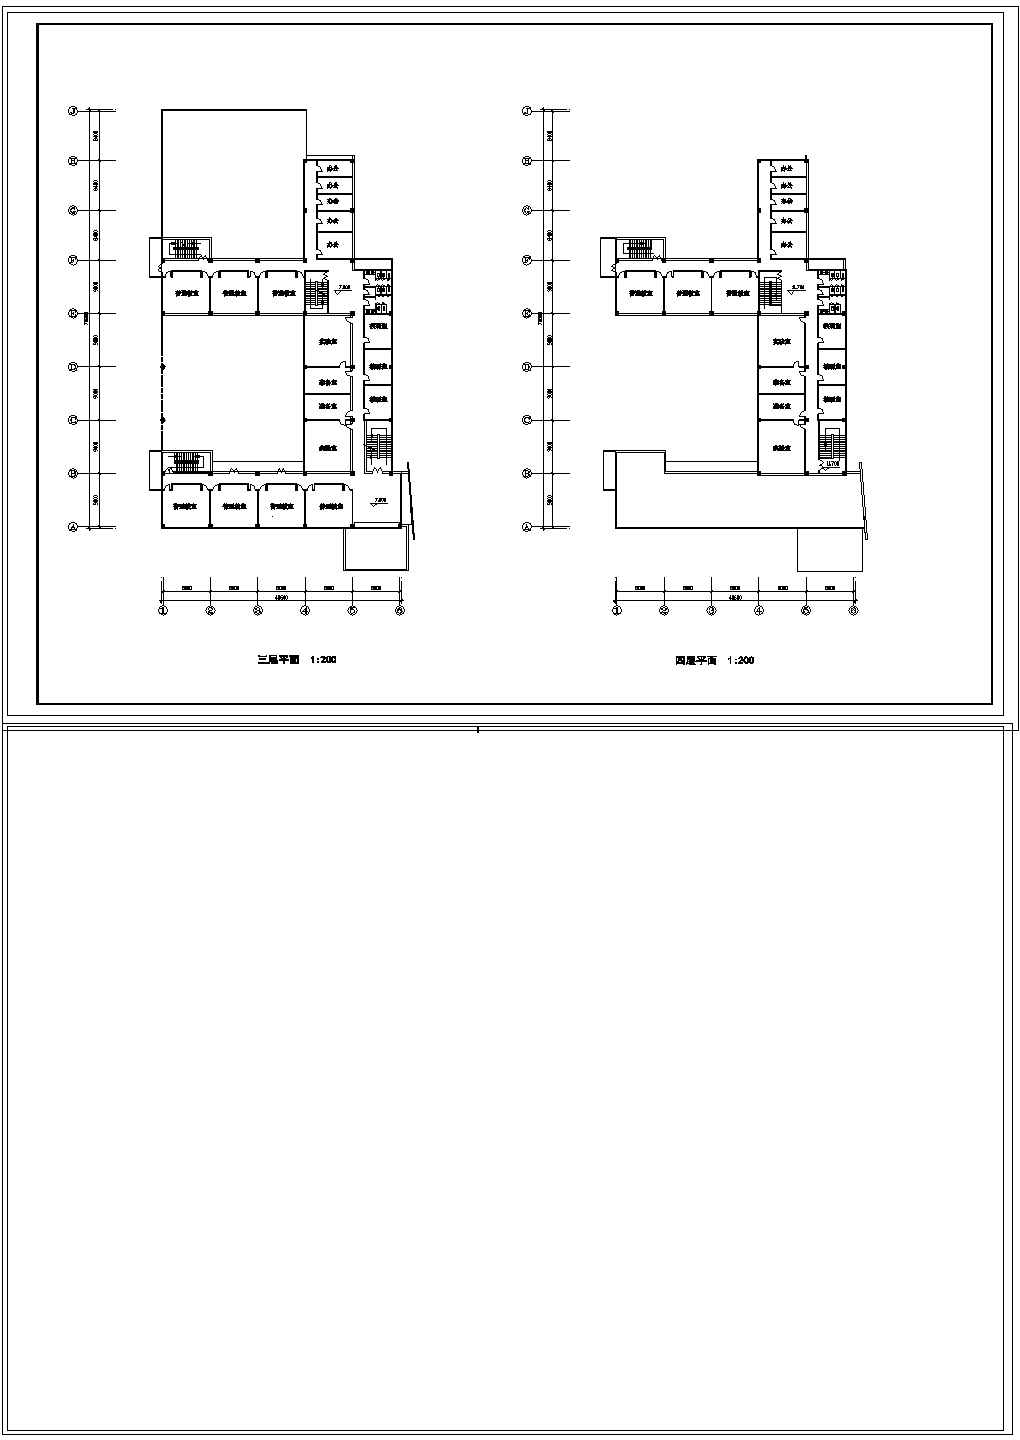 某高层小学教学楼建筑设计cad图(总图)